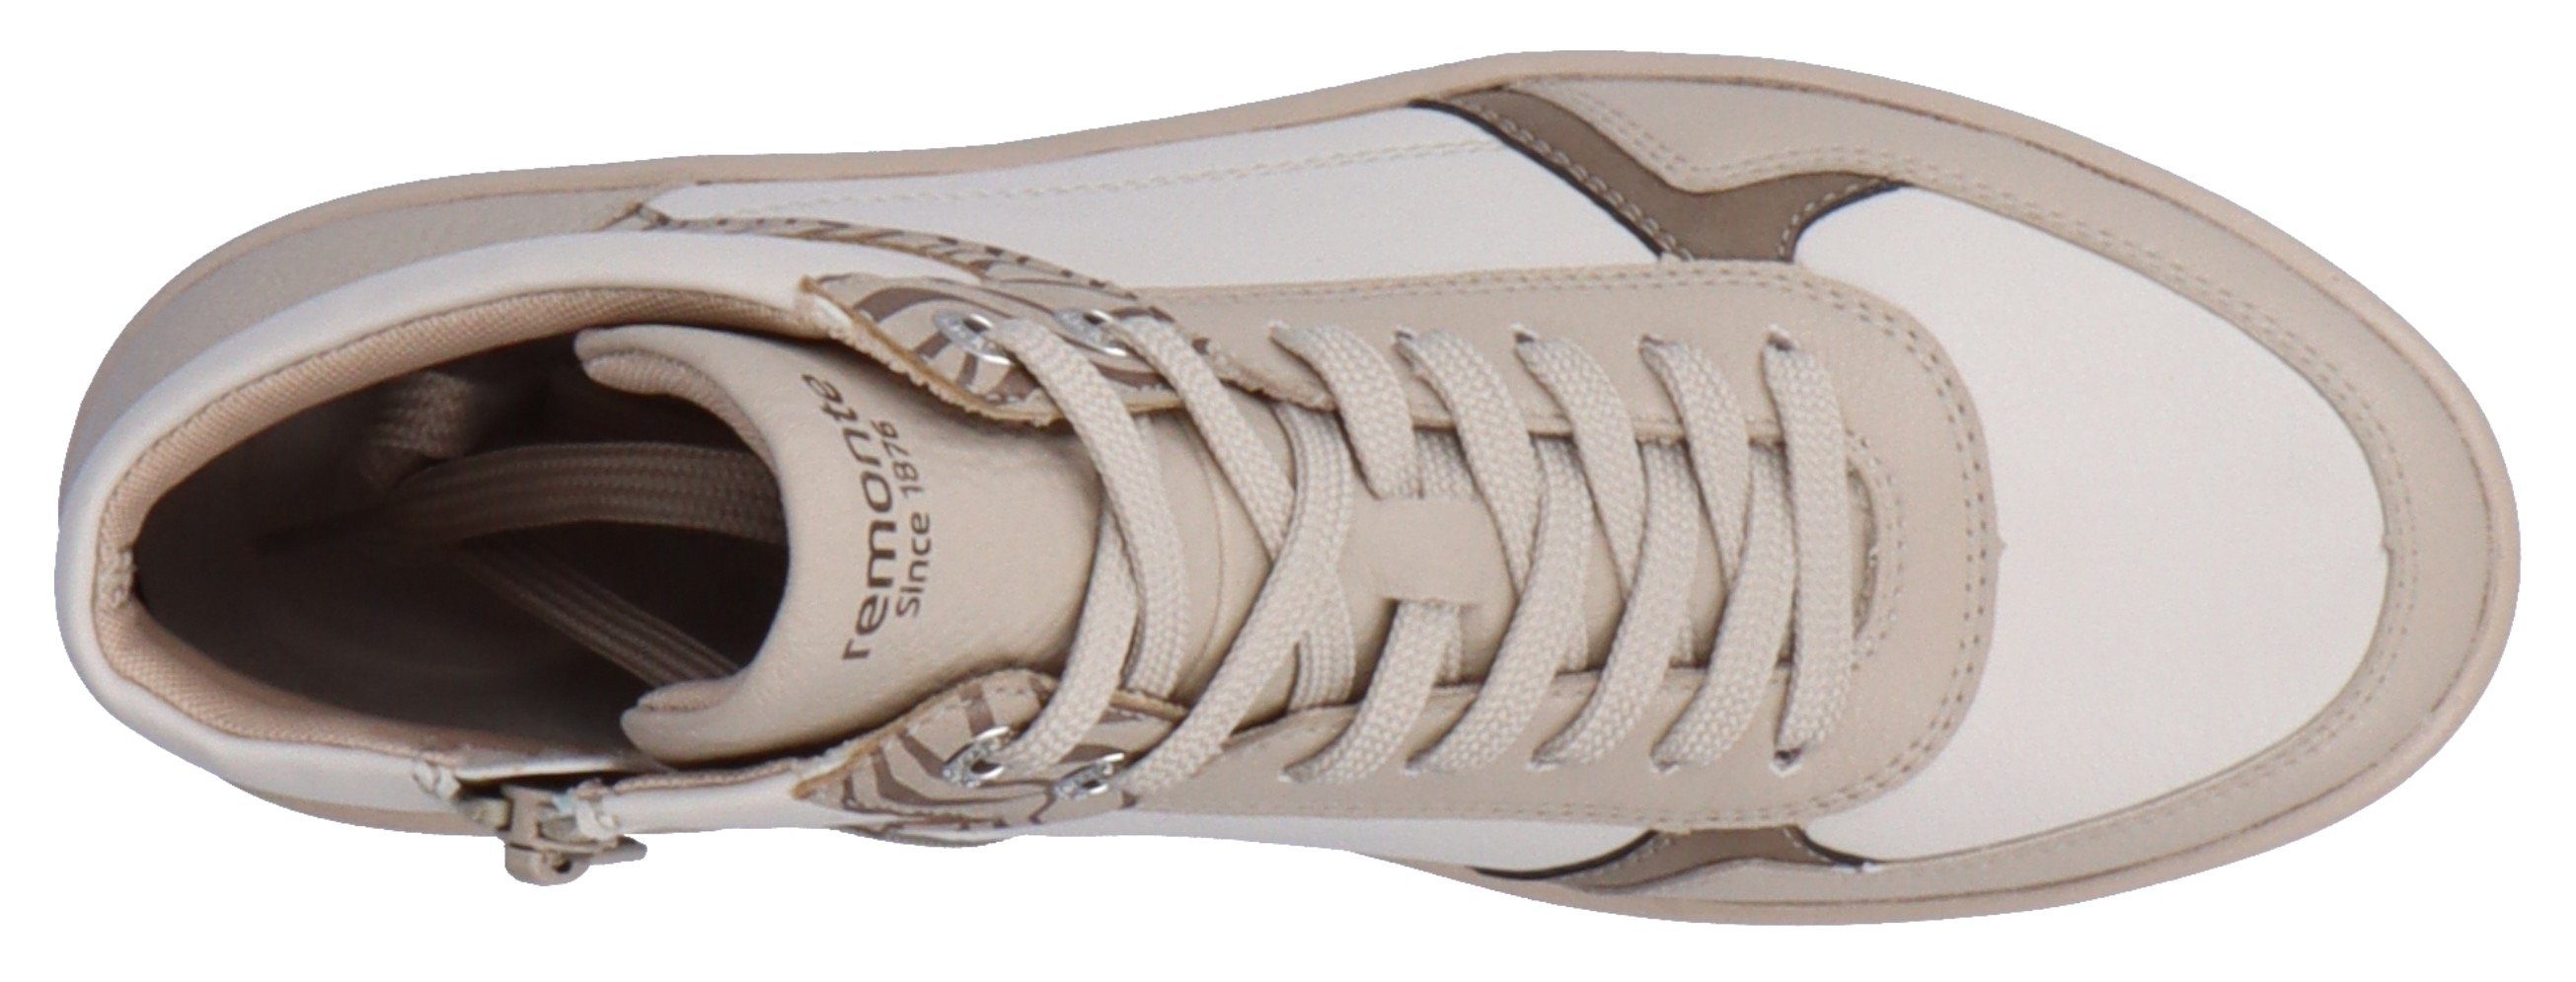 Remonte Sneaker mit hohem durch Tragekomfort offwhite kombiniert Soft-Foam Ausstattung